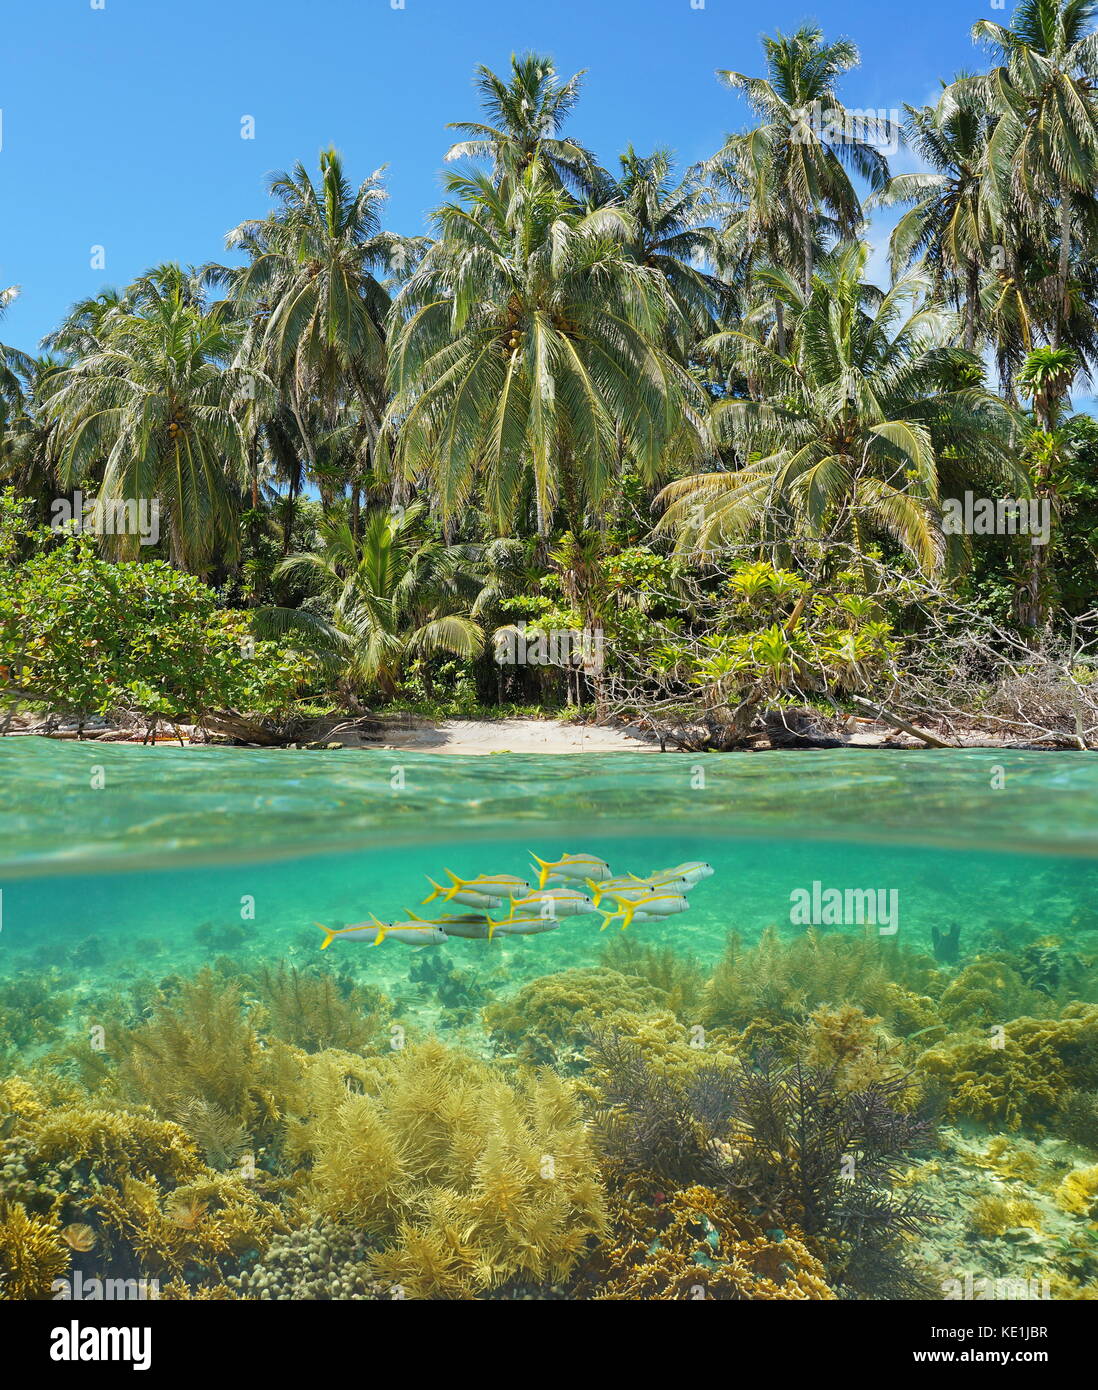 Oberhalb und unterhalb der Wasseroberfläche auf wilden Strand Ufer mit Korallen und Fische unter Wasser, Karibik, Panama, zapatilla Inseln Stockfoto